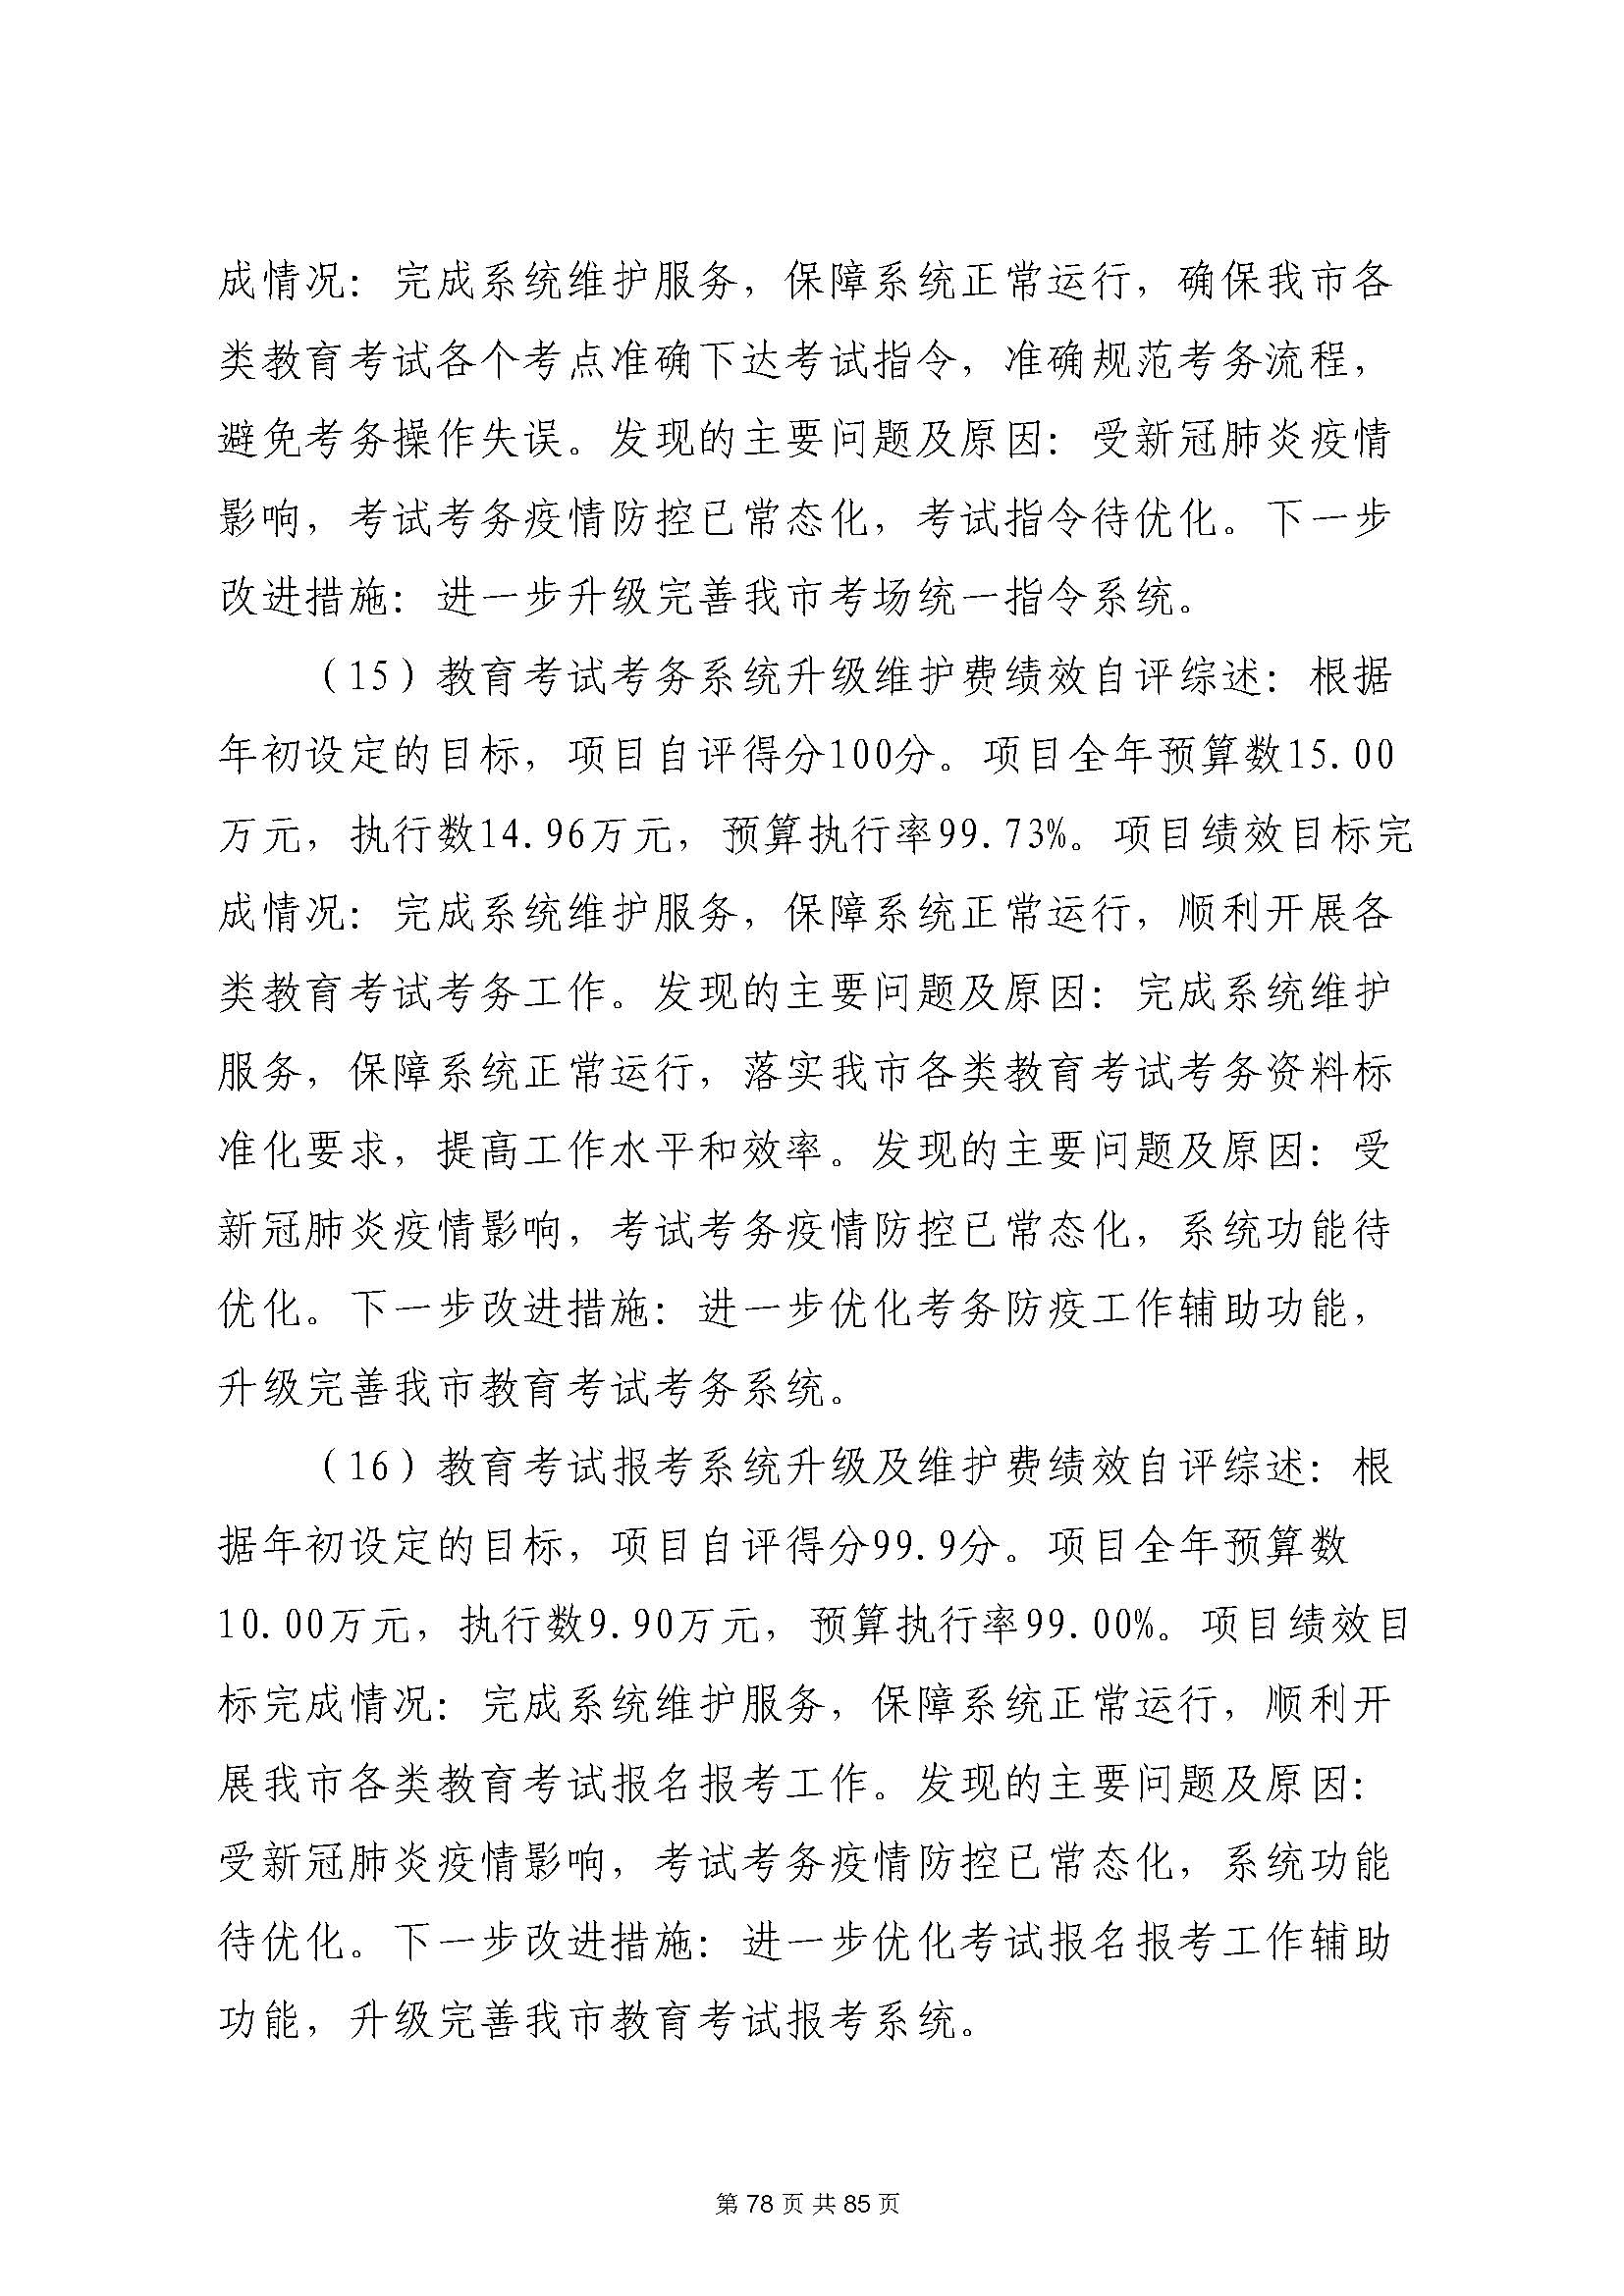 深圳市招生考试办公室2020年度部门决算_页面_79.jpg